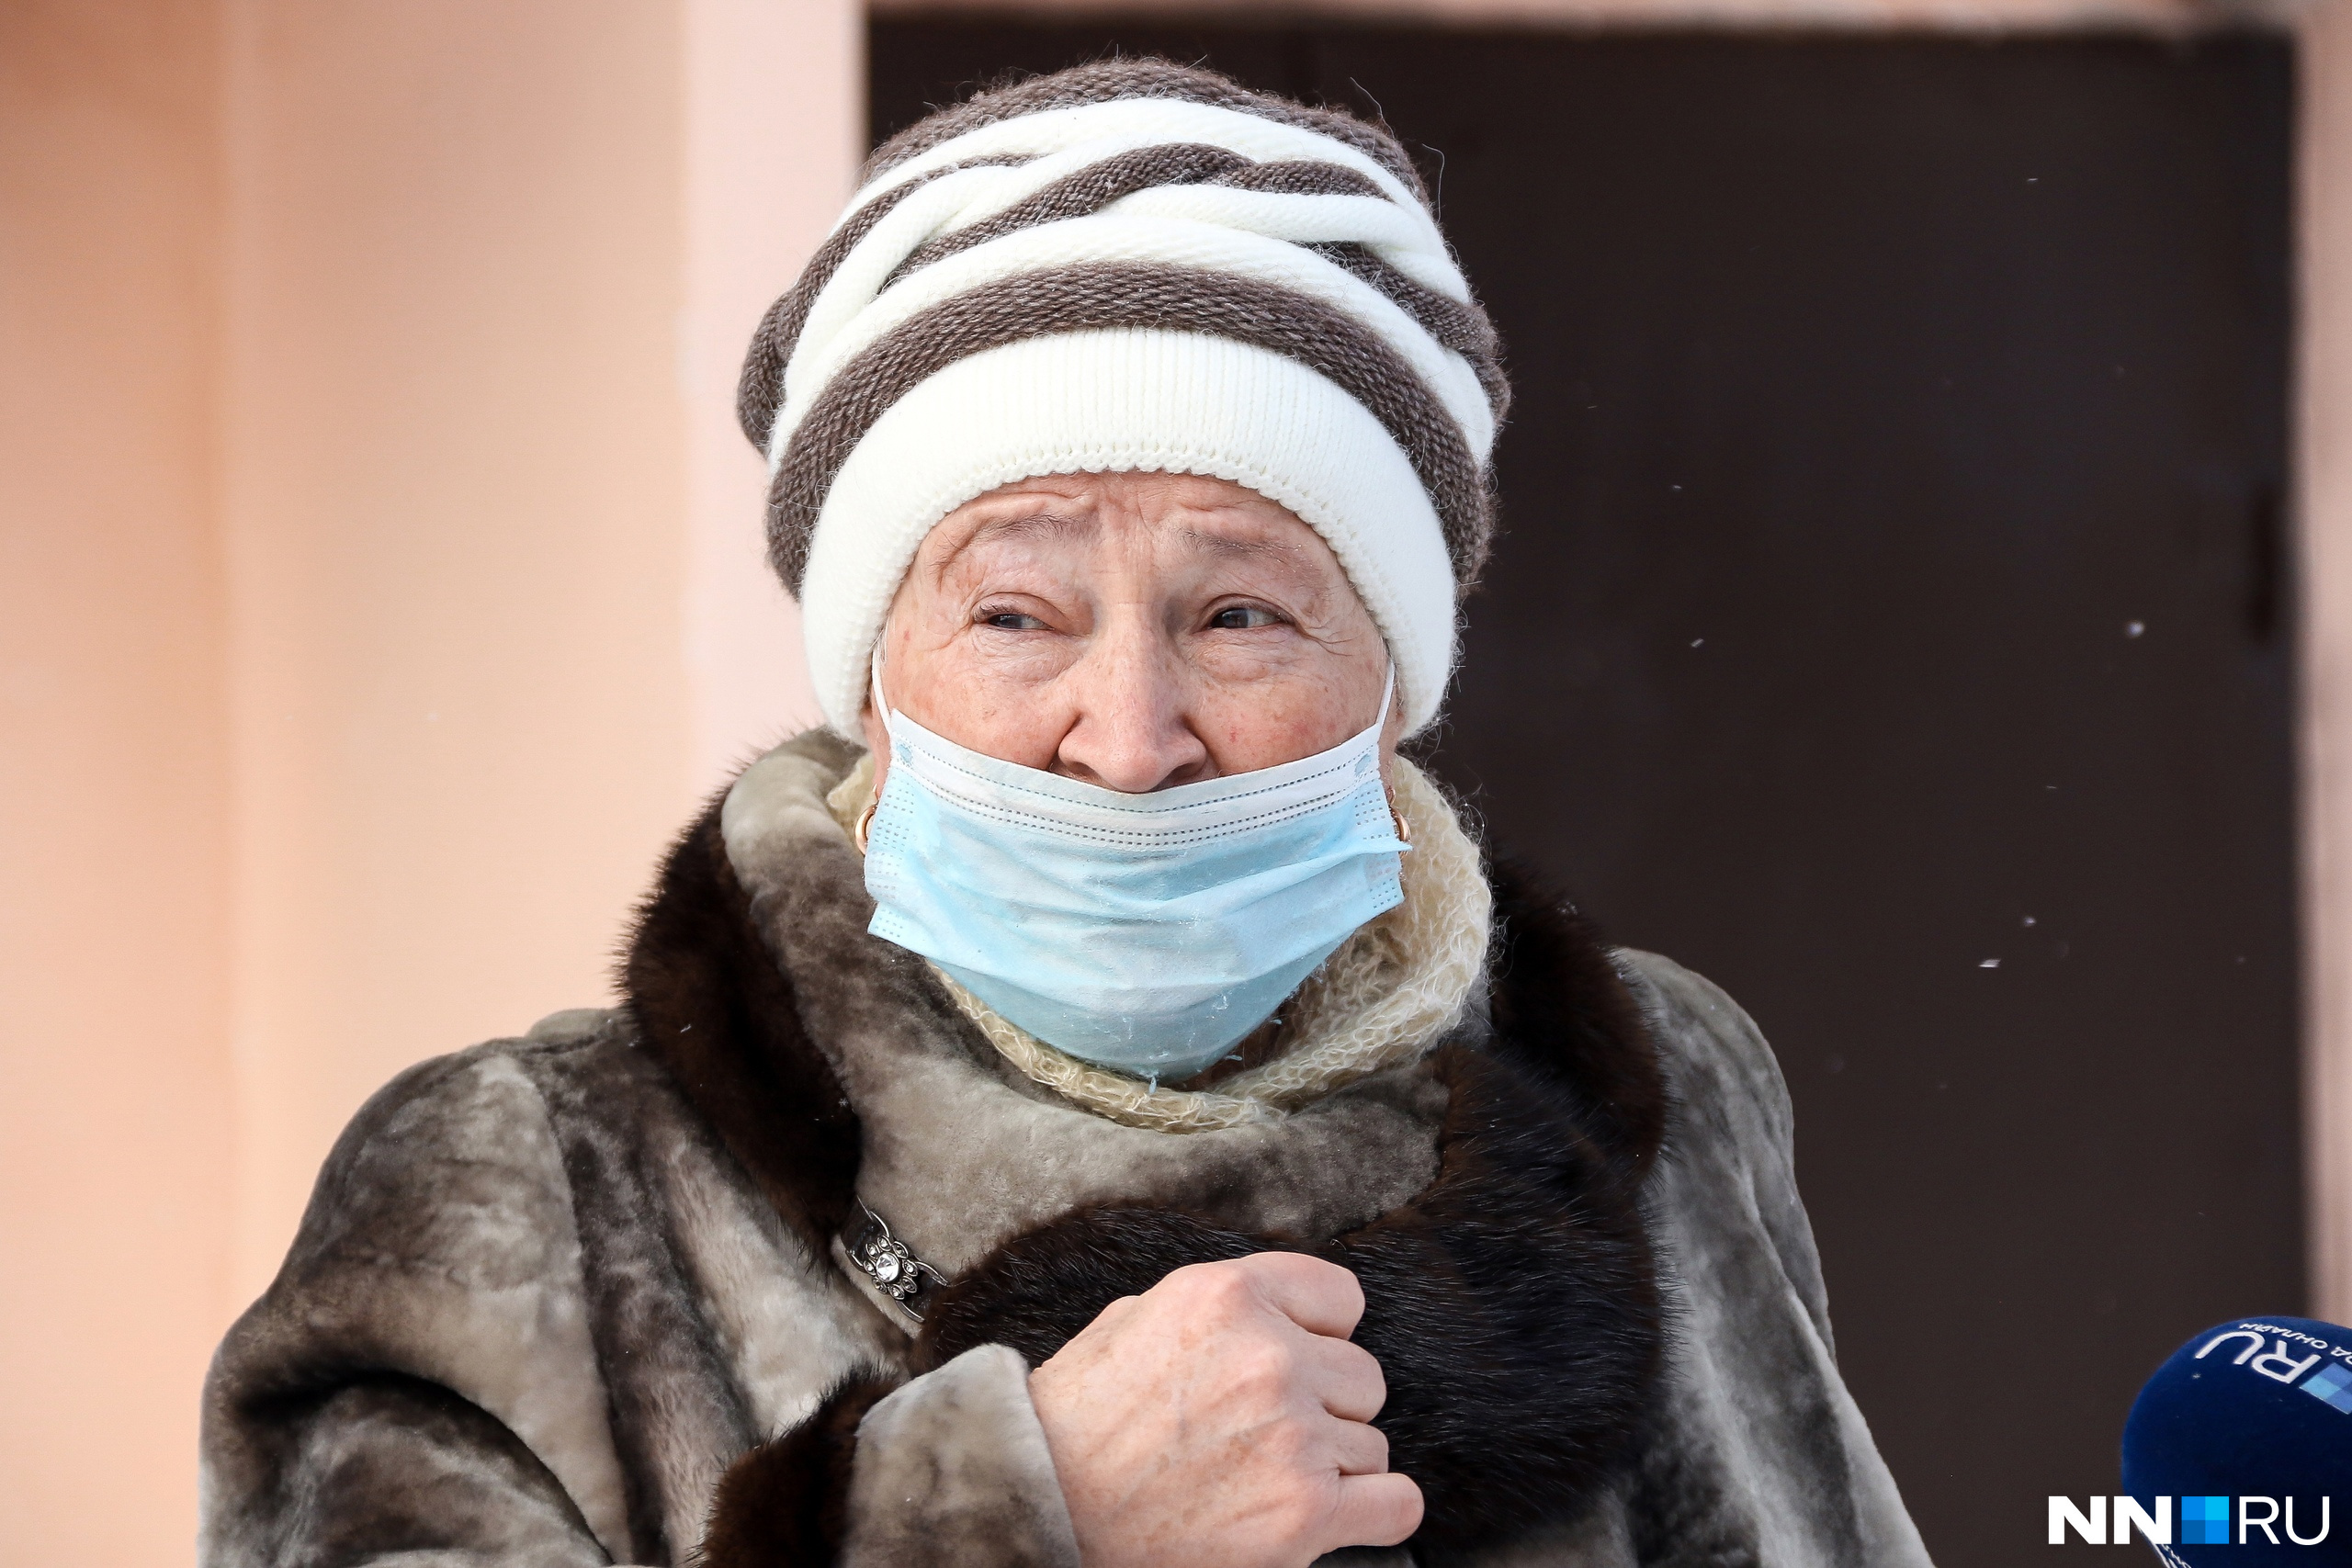 Соседка Вера Алексеевна предполагает, что у бабушки, выбросившей внука, было плохо с головой 